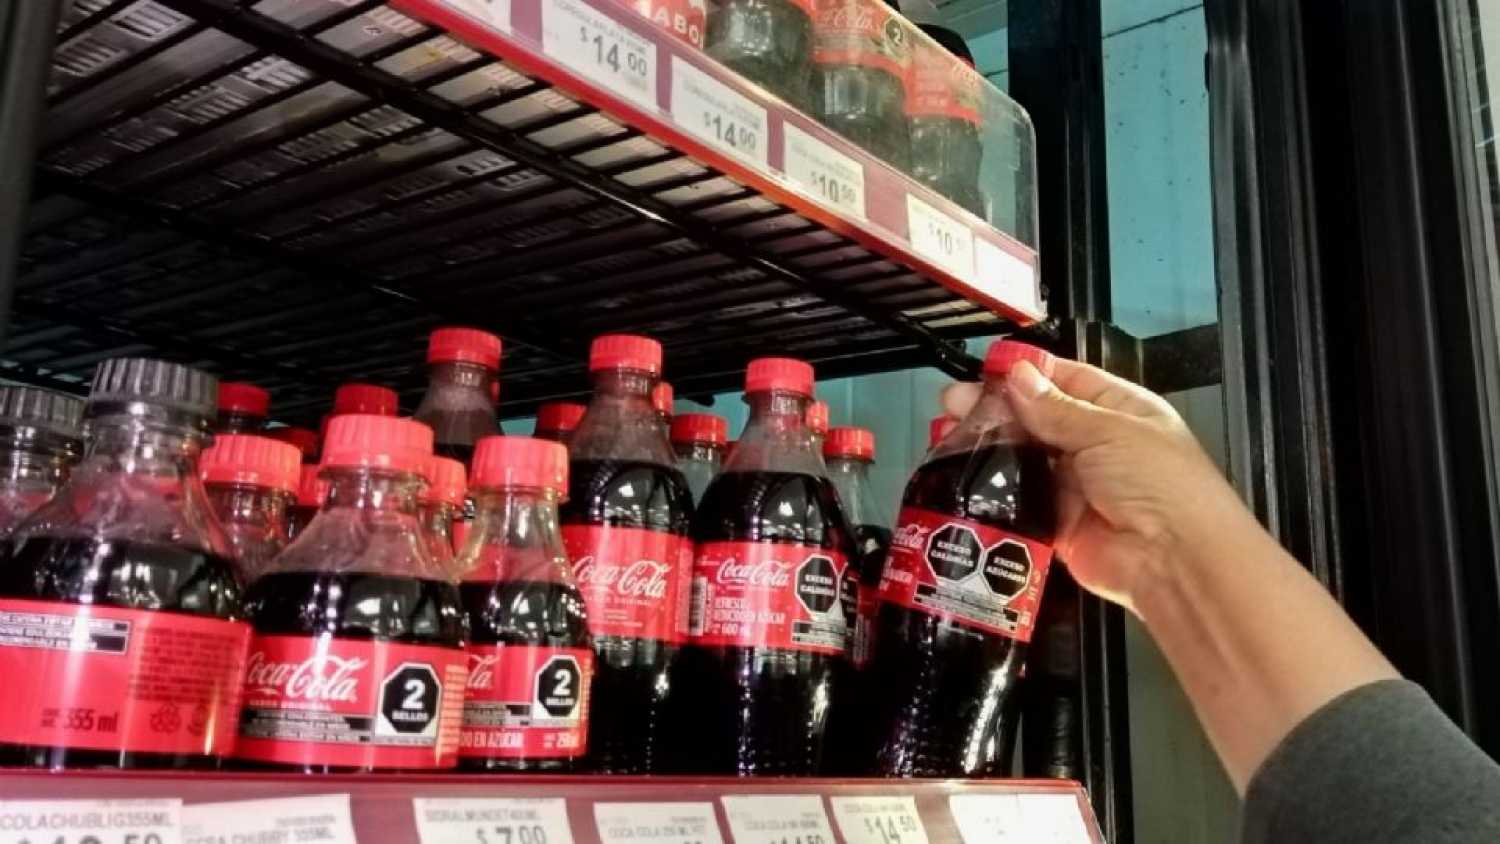 ¿Cómo conseguir gratis un refrigerador de Coca-Cola para mi negocio?